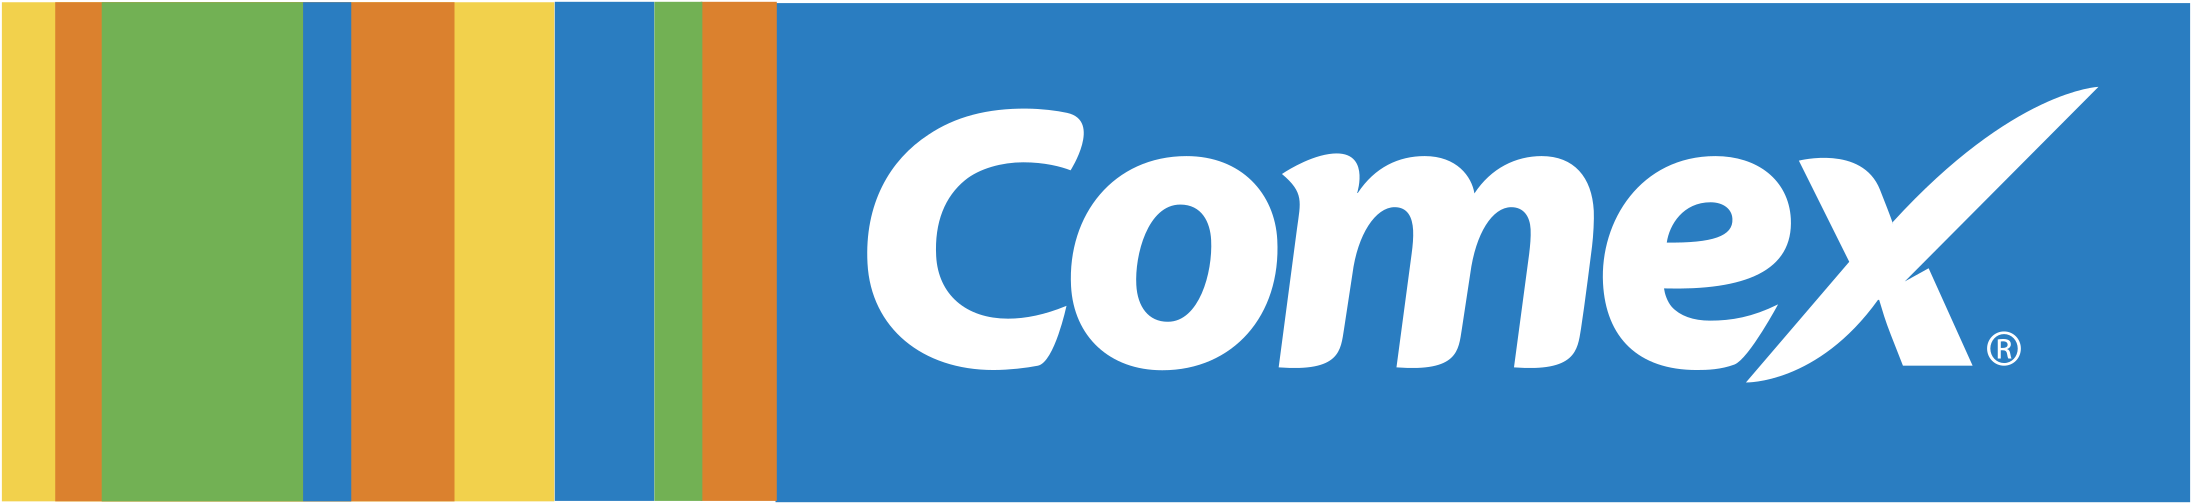 Comex Logo Png Transparent - Logos Pinturas Comex Png Clipart (2400x2400), Png Download